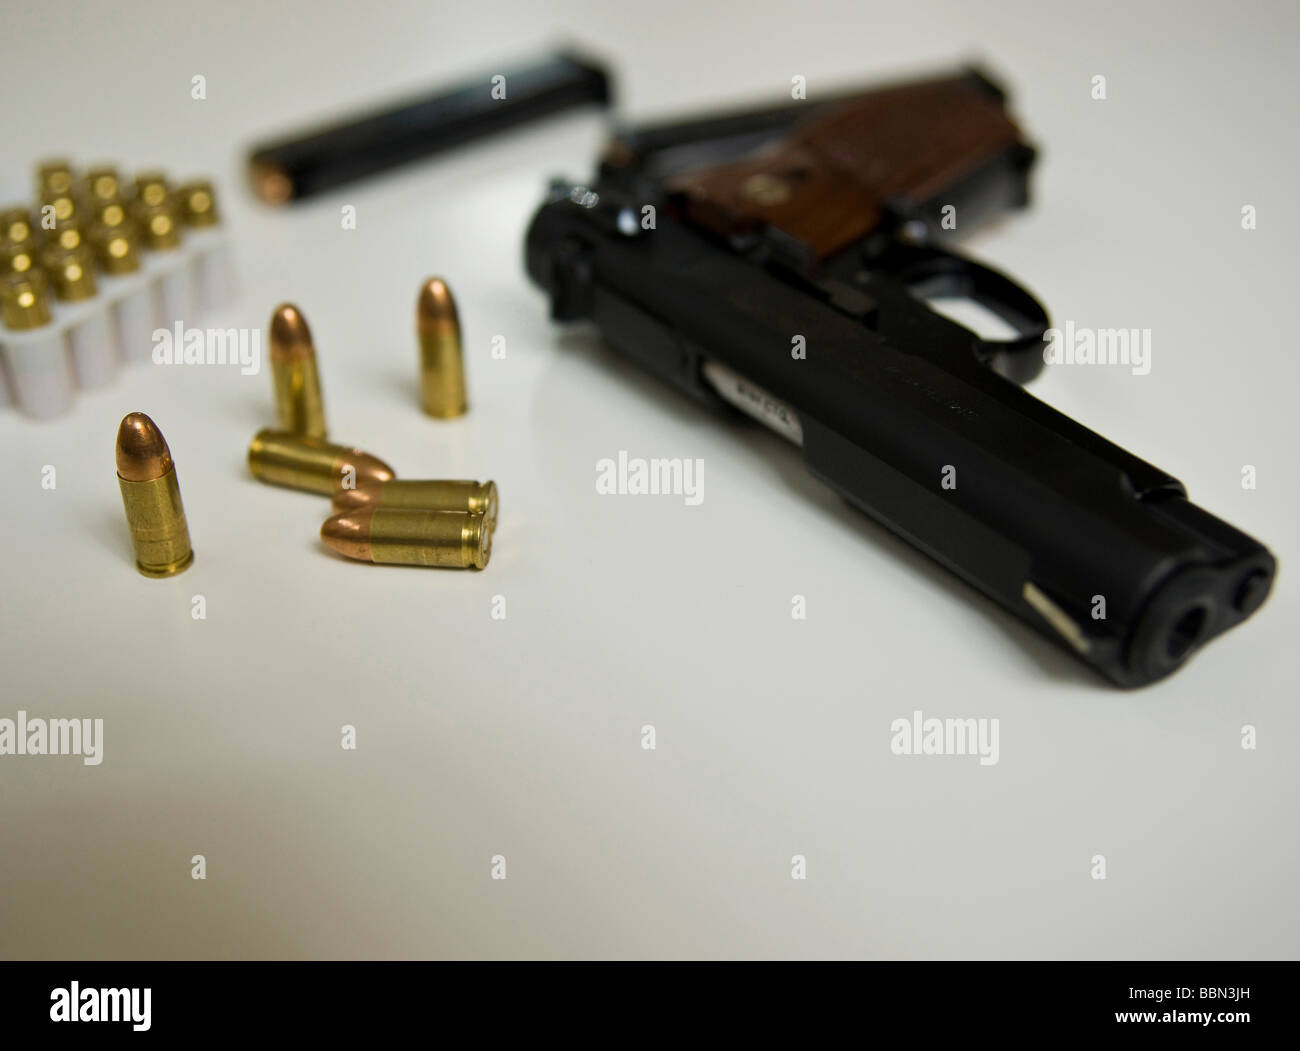 Un pistolet avec des munitions sur une table Banque D'Images